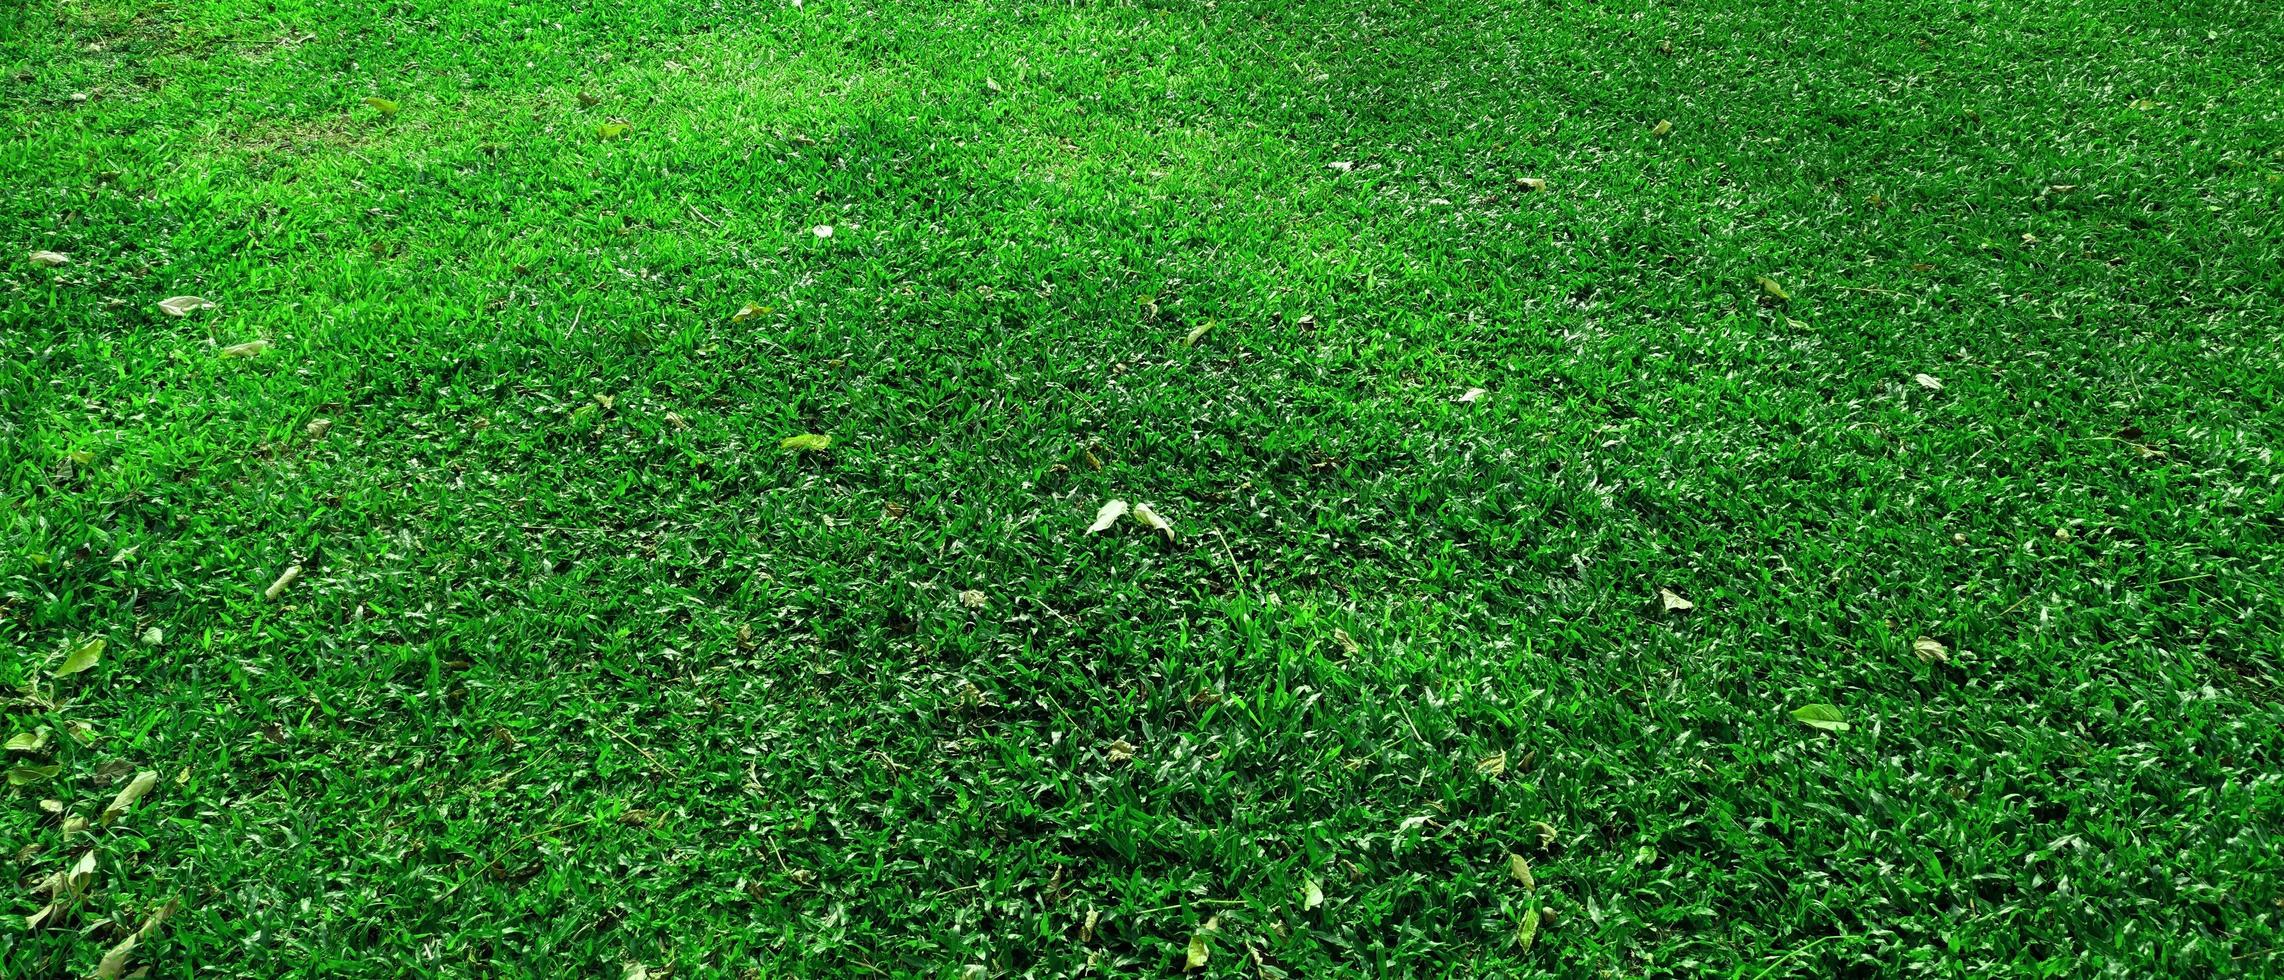 fond de texture d'herbe verte dans le parc photo